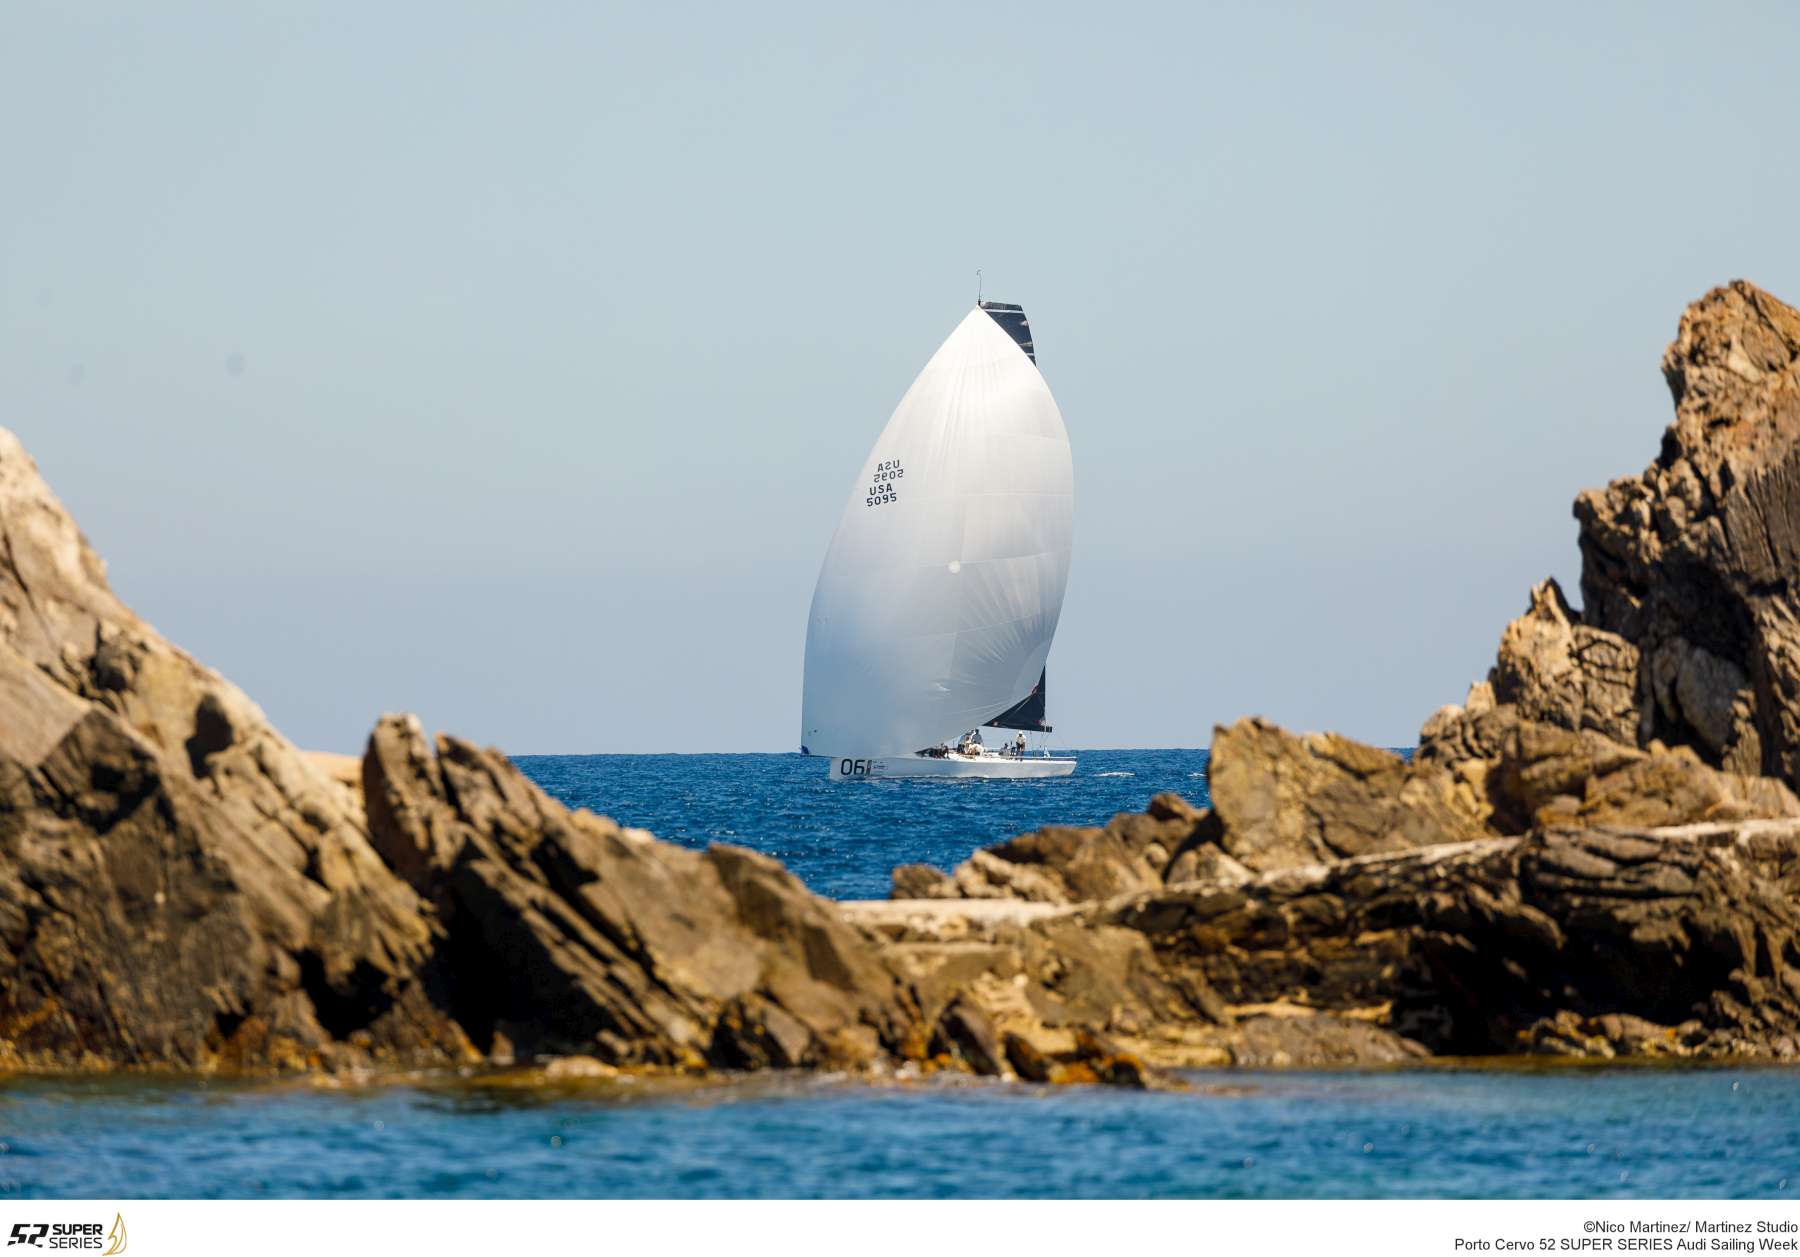 Sled si porta al comando nella prima giornata dell'Audi Sailing Week - 52 Super Series - NEWS - Yacht Club Costa Smeralda